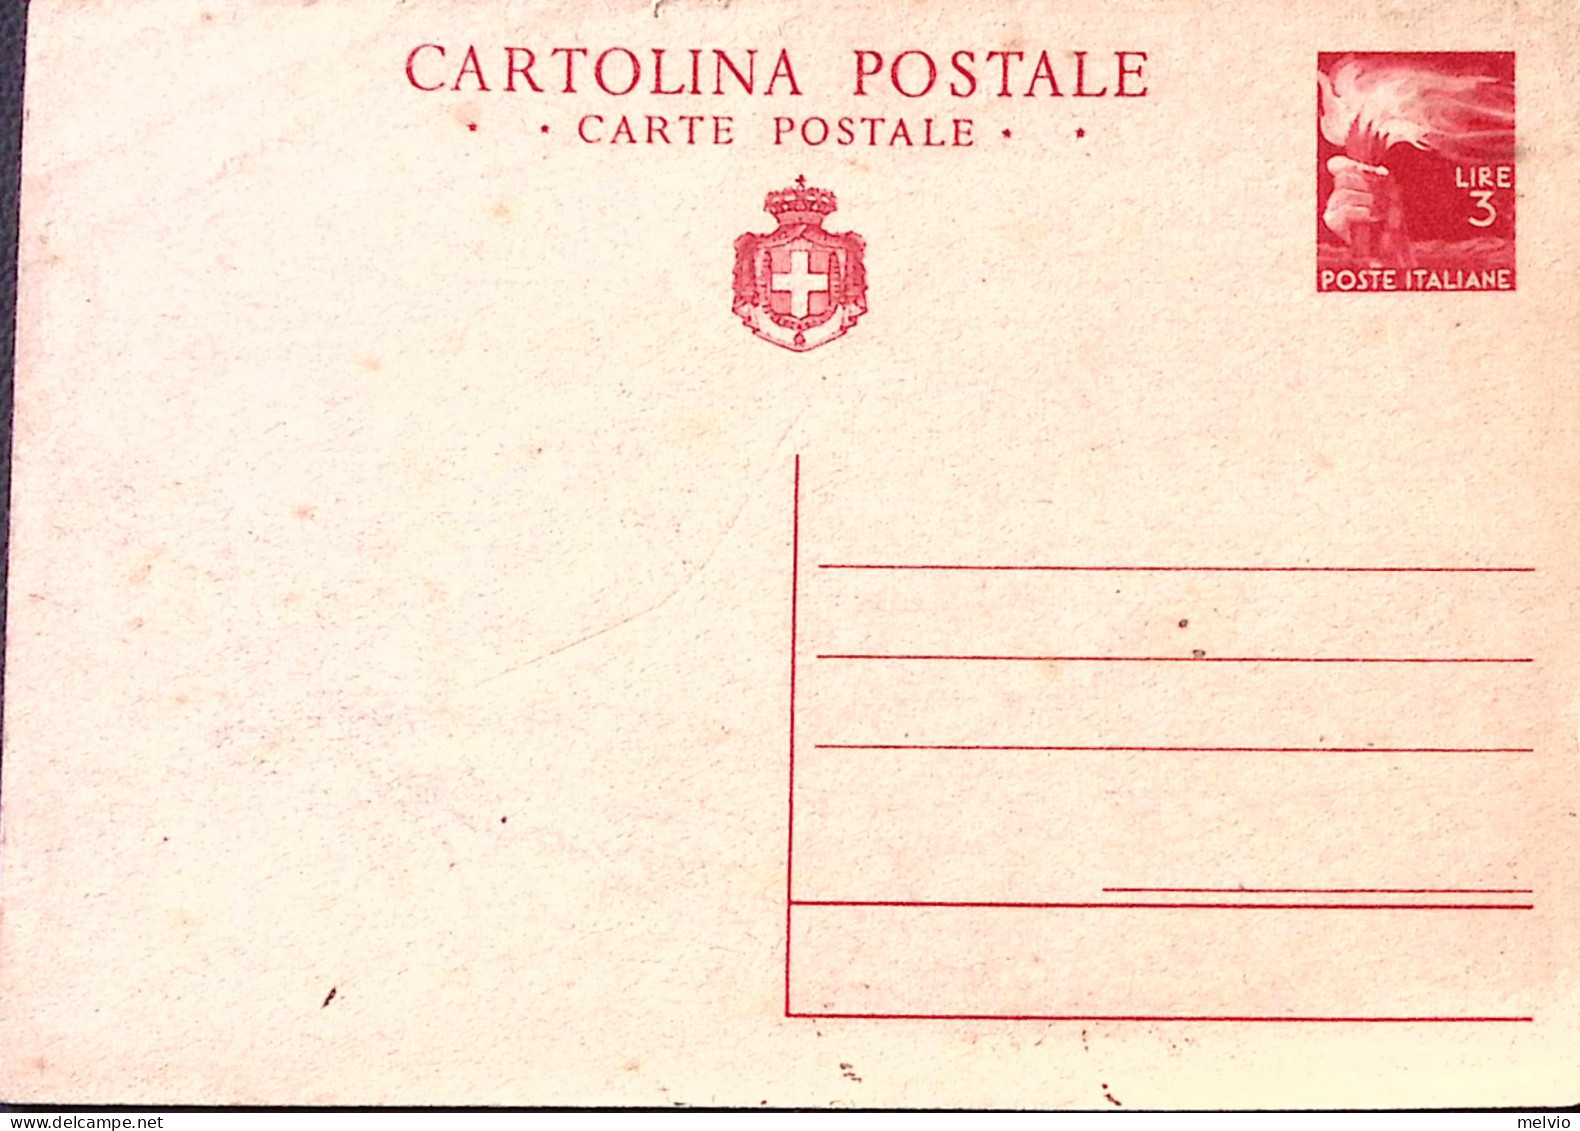 1945-Cartolina Postale Democratica Con Stemma Lire 3 (C128) Nuova - Ganzsachen